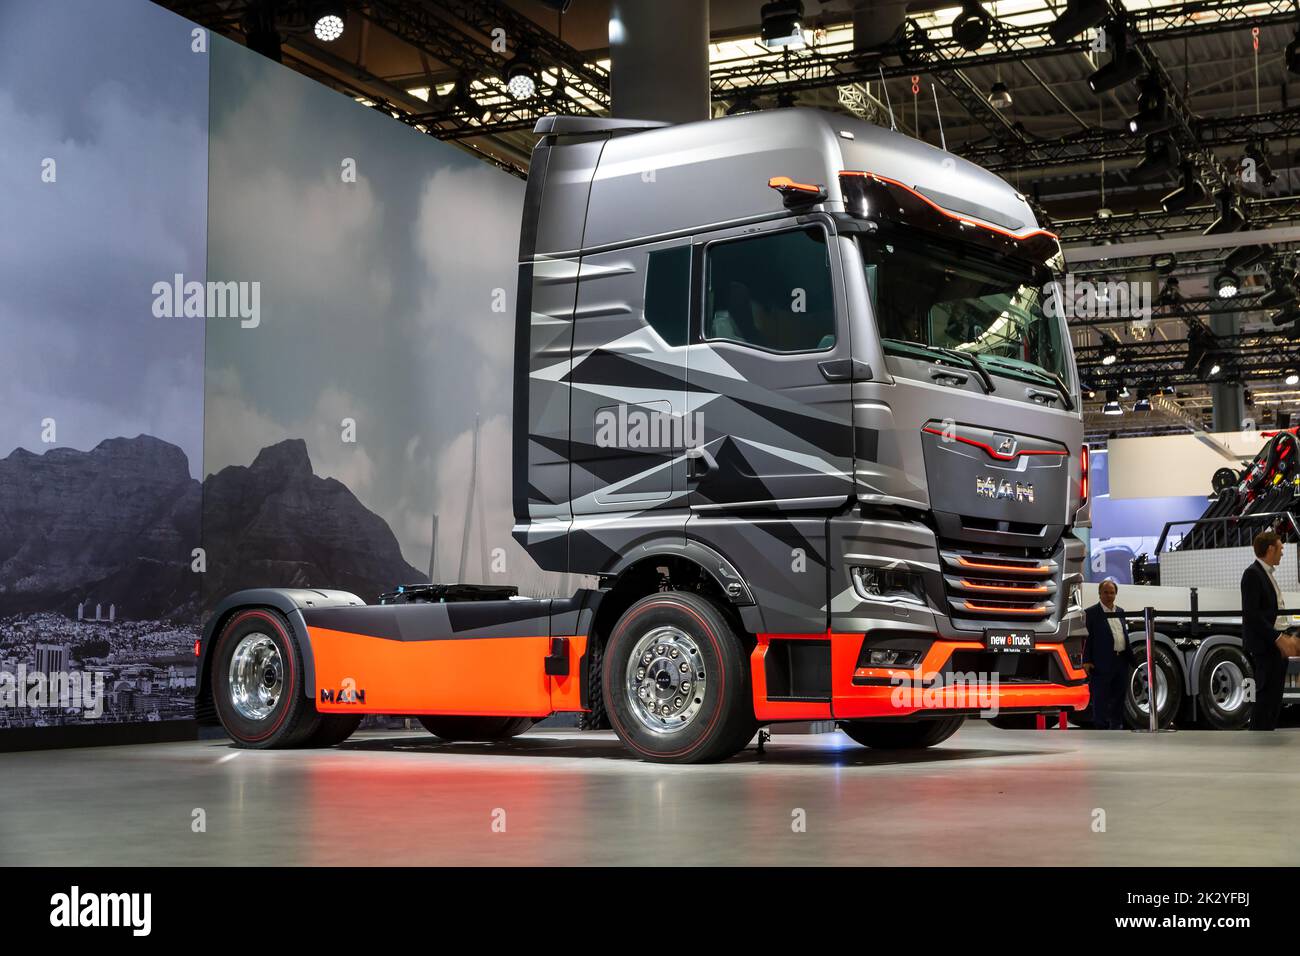 MAN eTruck Electric Truck est présent au salon de l'automobile de transport IAA de Hanovre. Allemagne - 20 septembre 2022 Banque D'Images